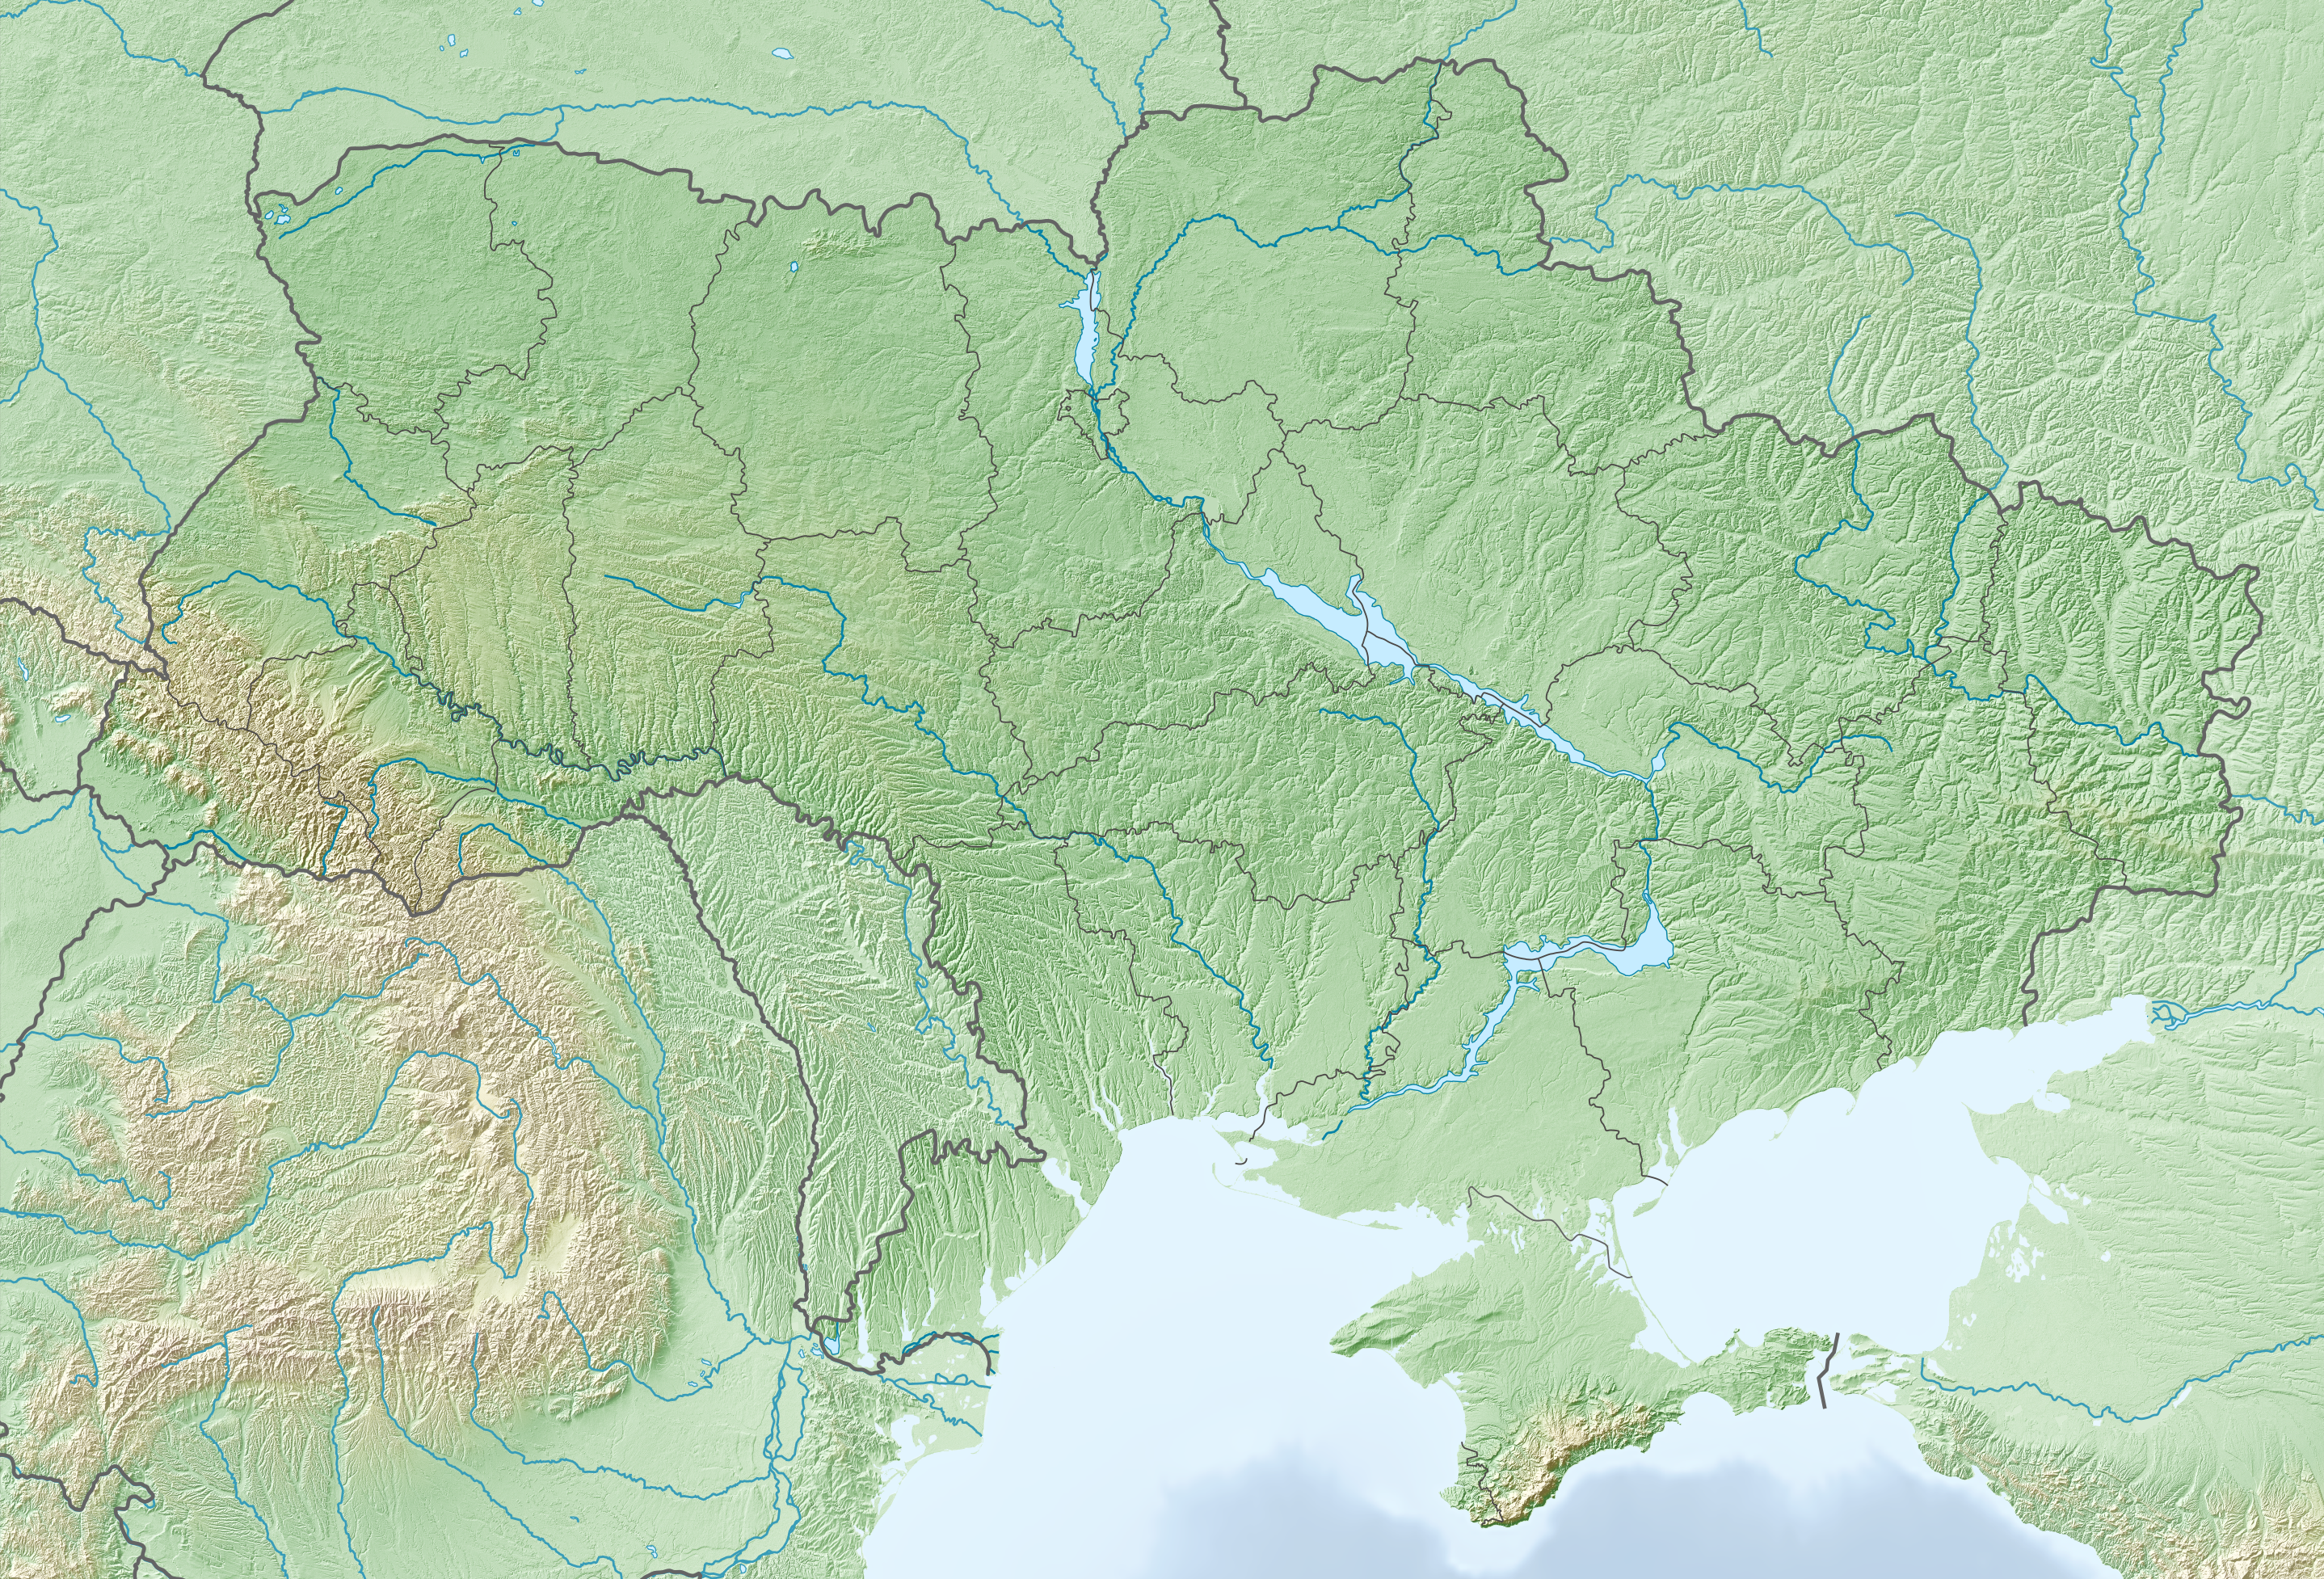 Russo-Ukrainian War detailed relief map is located in Ukraine